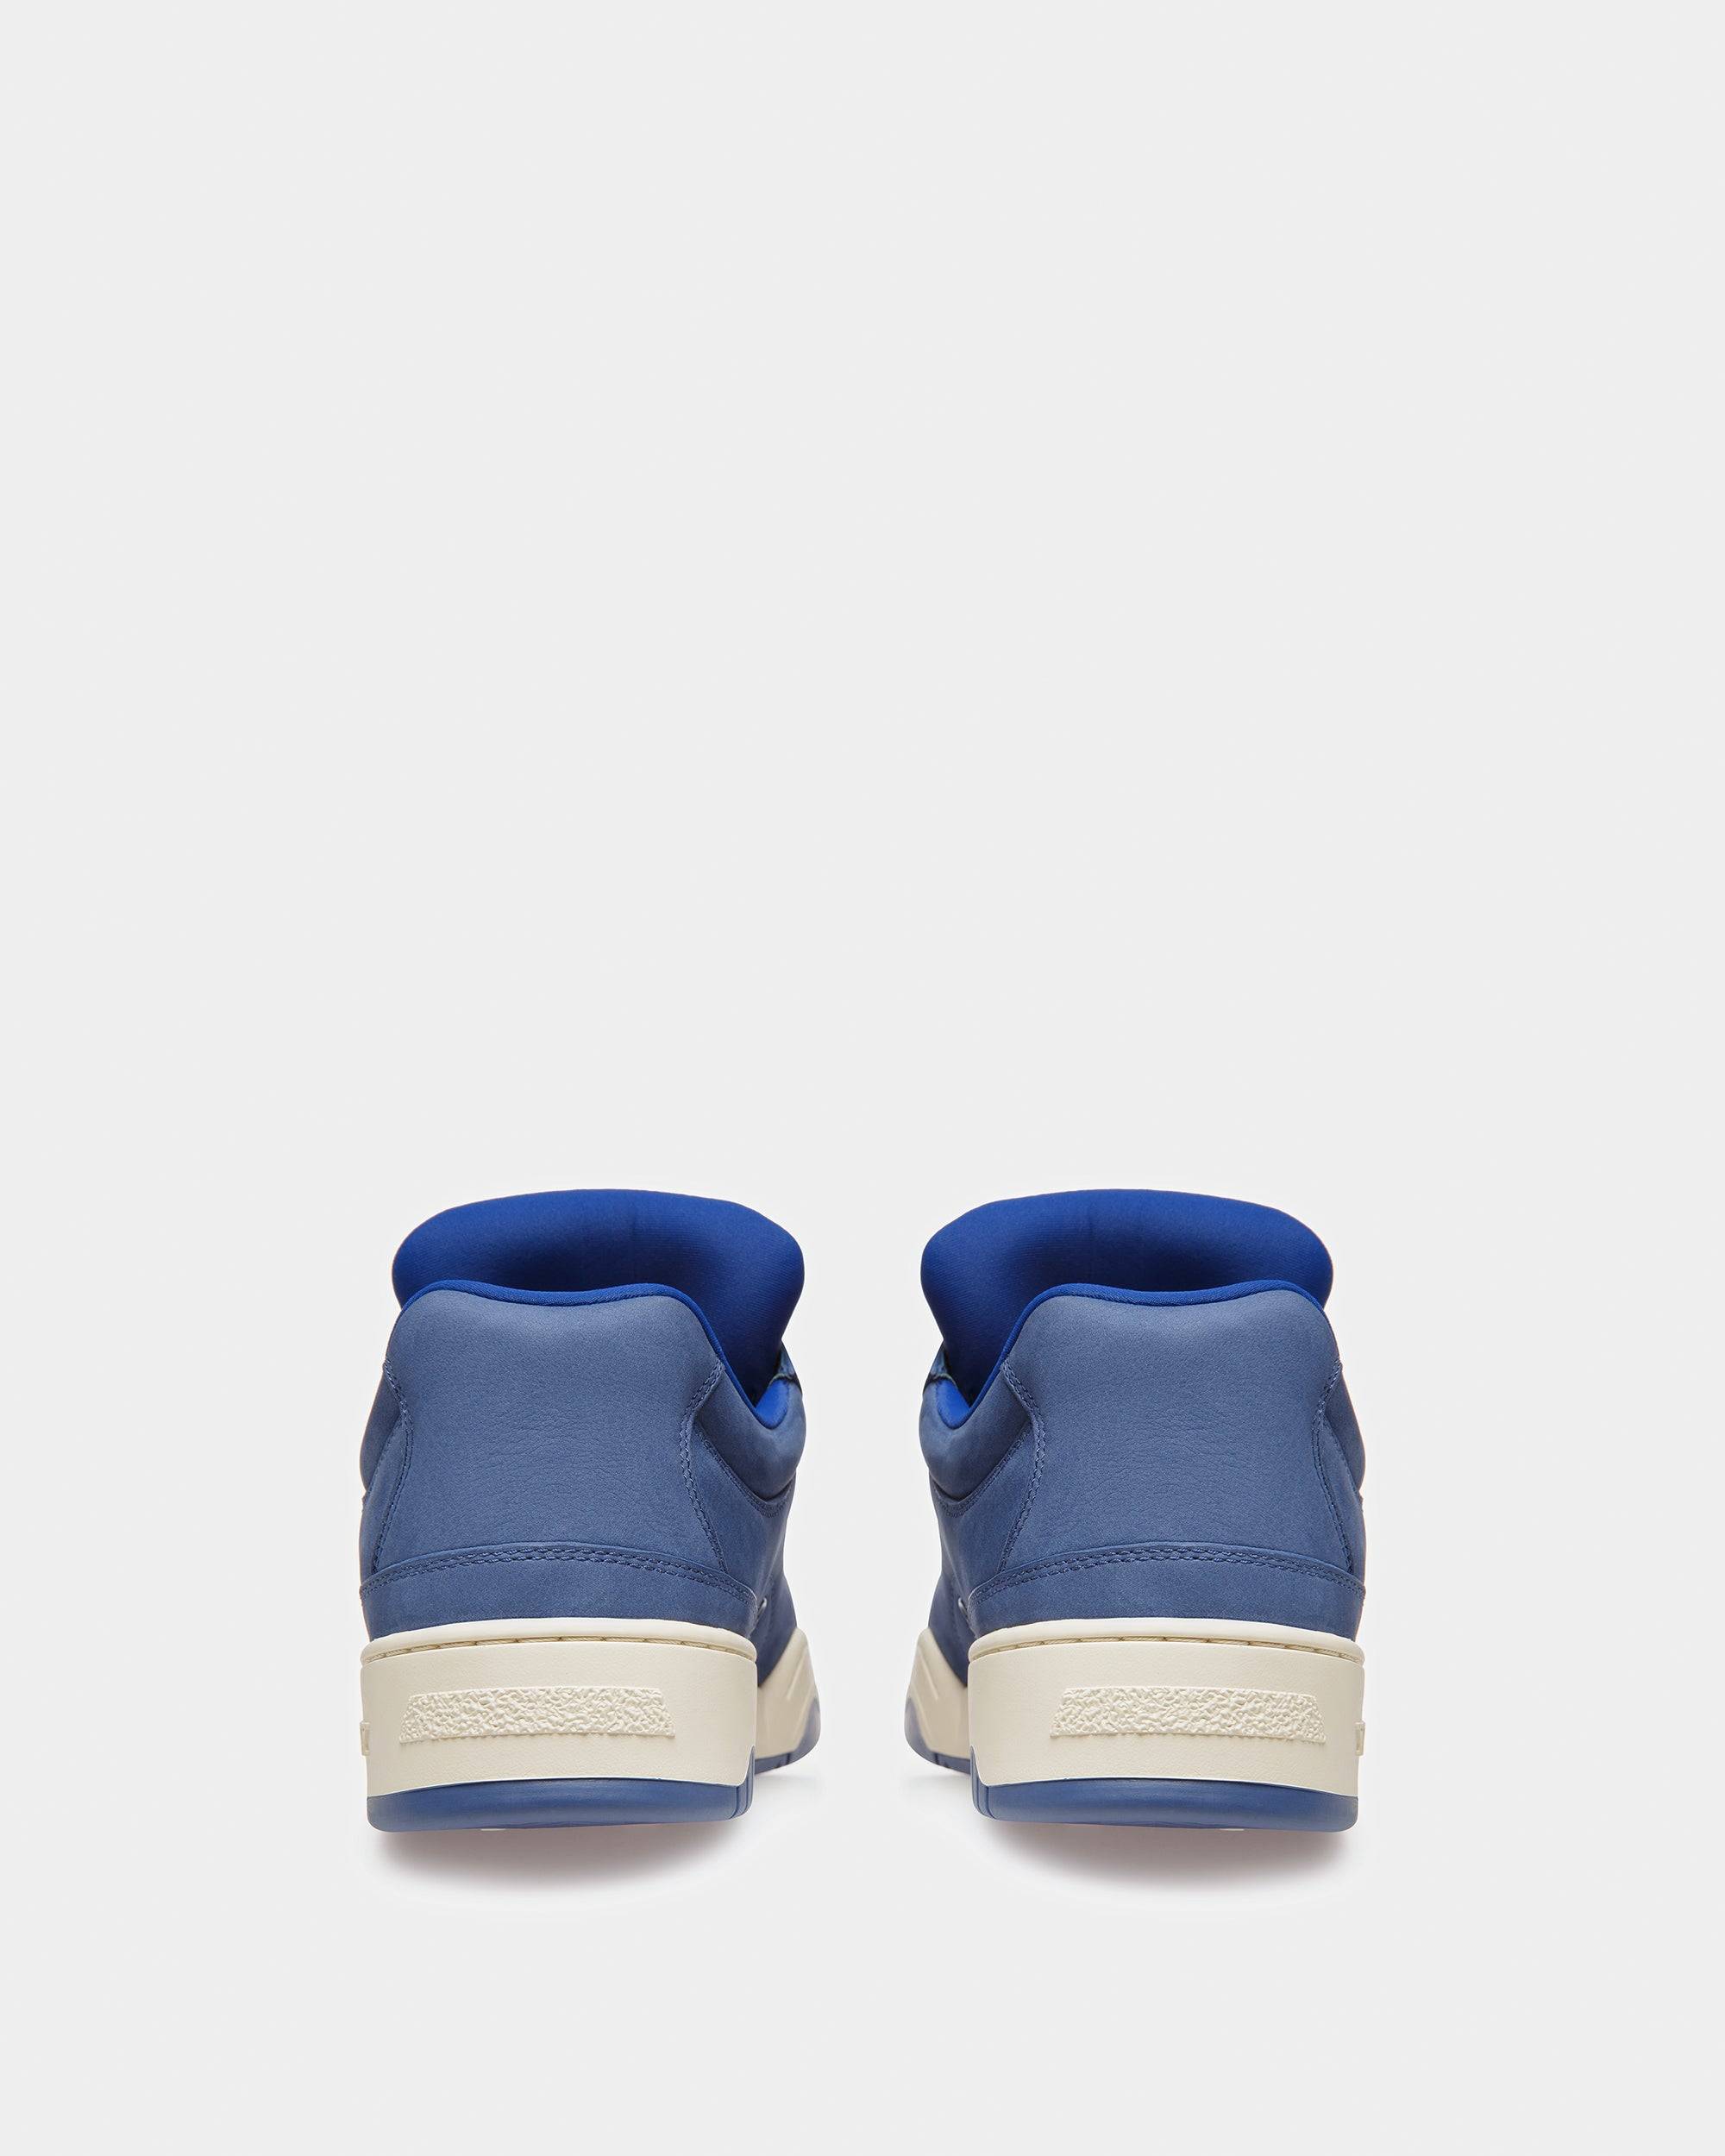 Kiro Sneaker In Pelle Blu Elettrico - Bally - 04